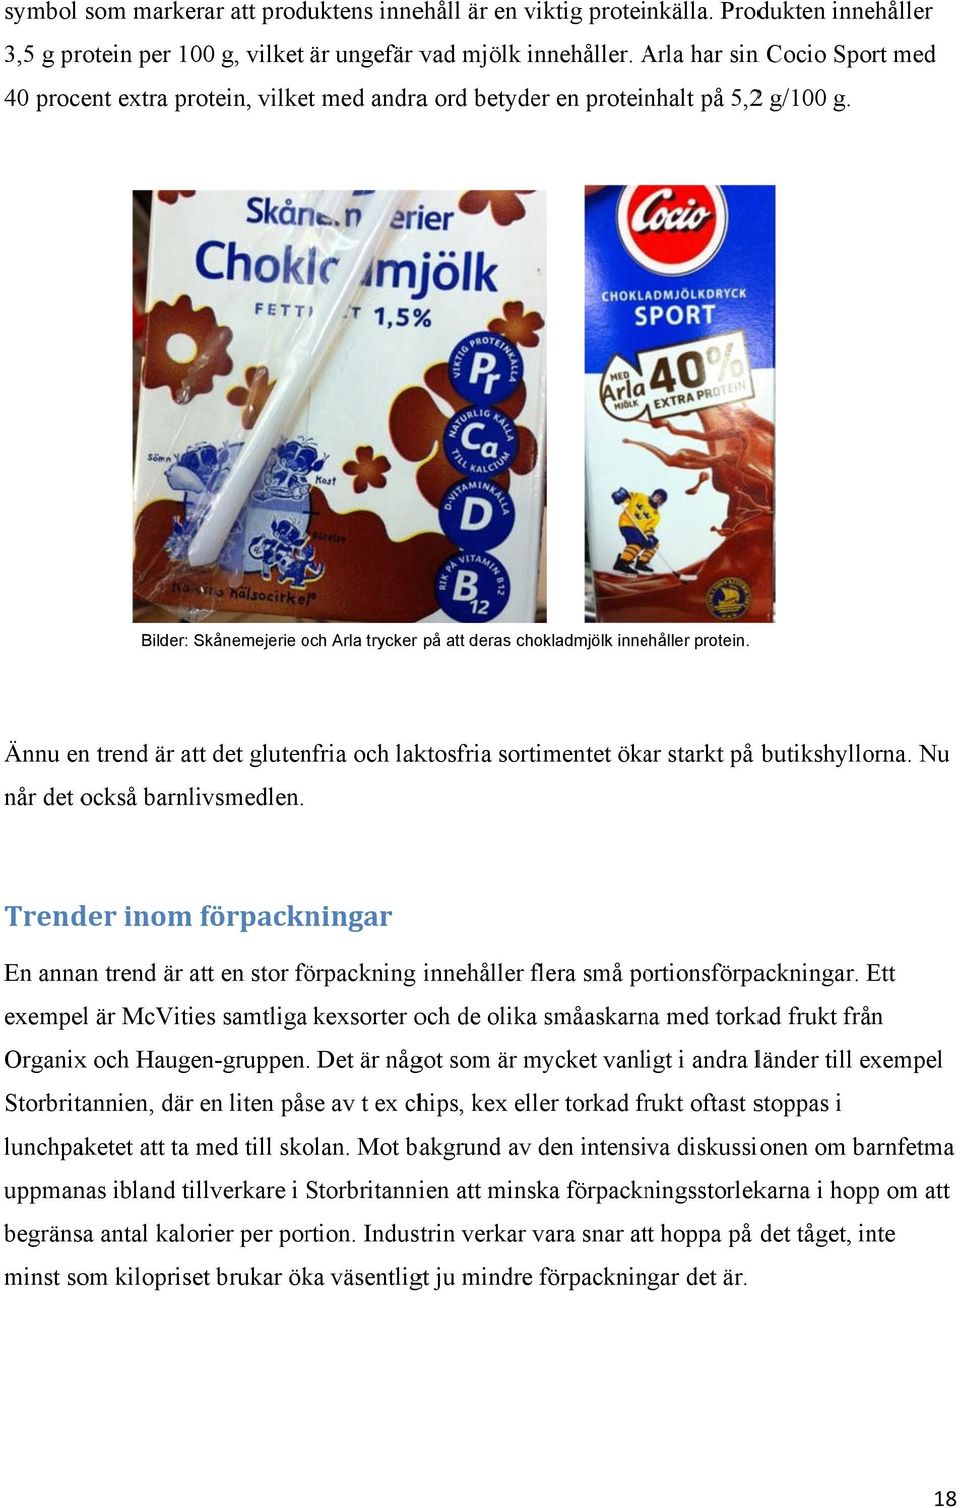 Bilder: Skånemejerie och o Arla trycker på att deras chokladmjölk innehåller protein. Ännu en trend är att det glutenfria och laktosfria sortimentet ökar starkt på butikshyllorna.